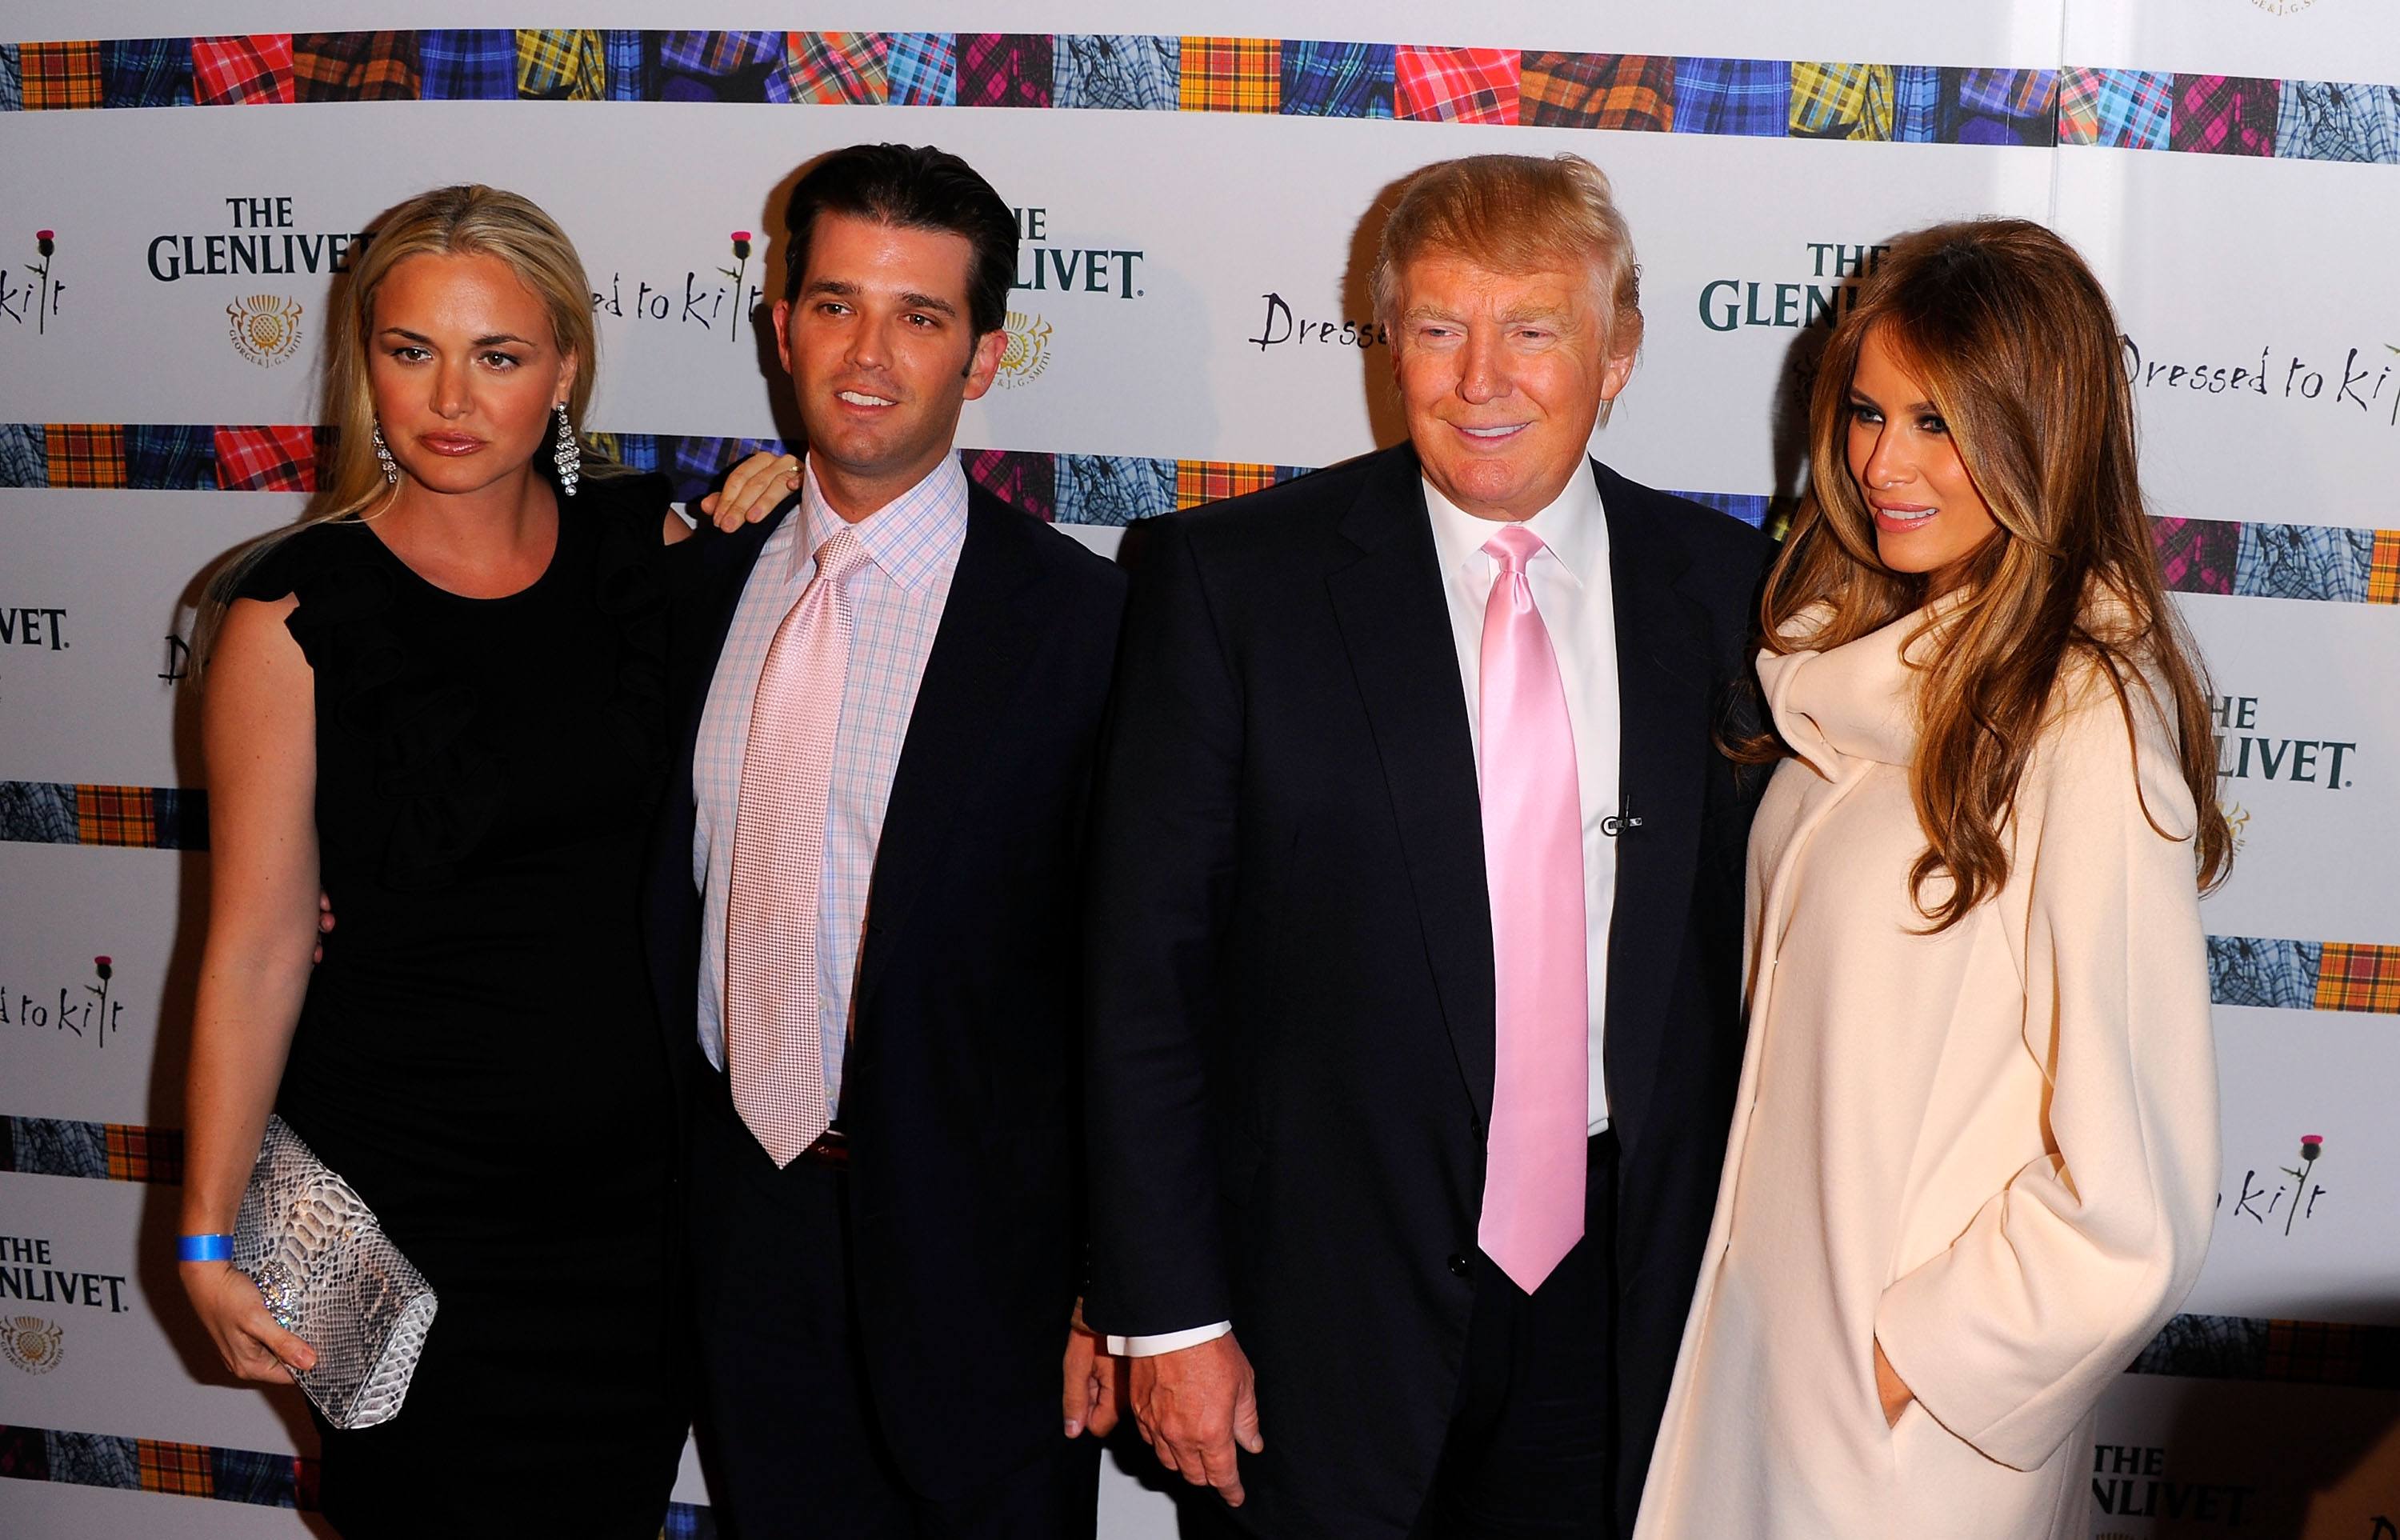 Vanessa Trump, Donald Trump Jr., Donald Trump and Melania Trump